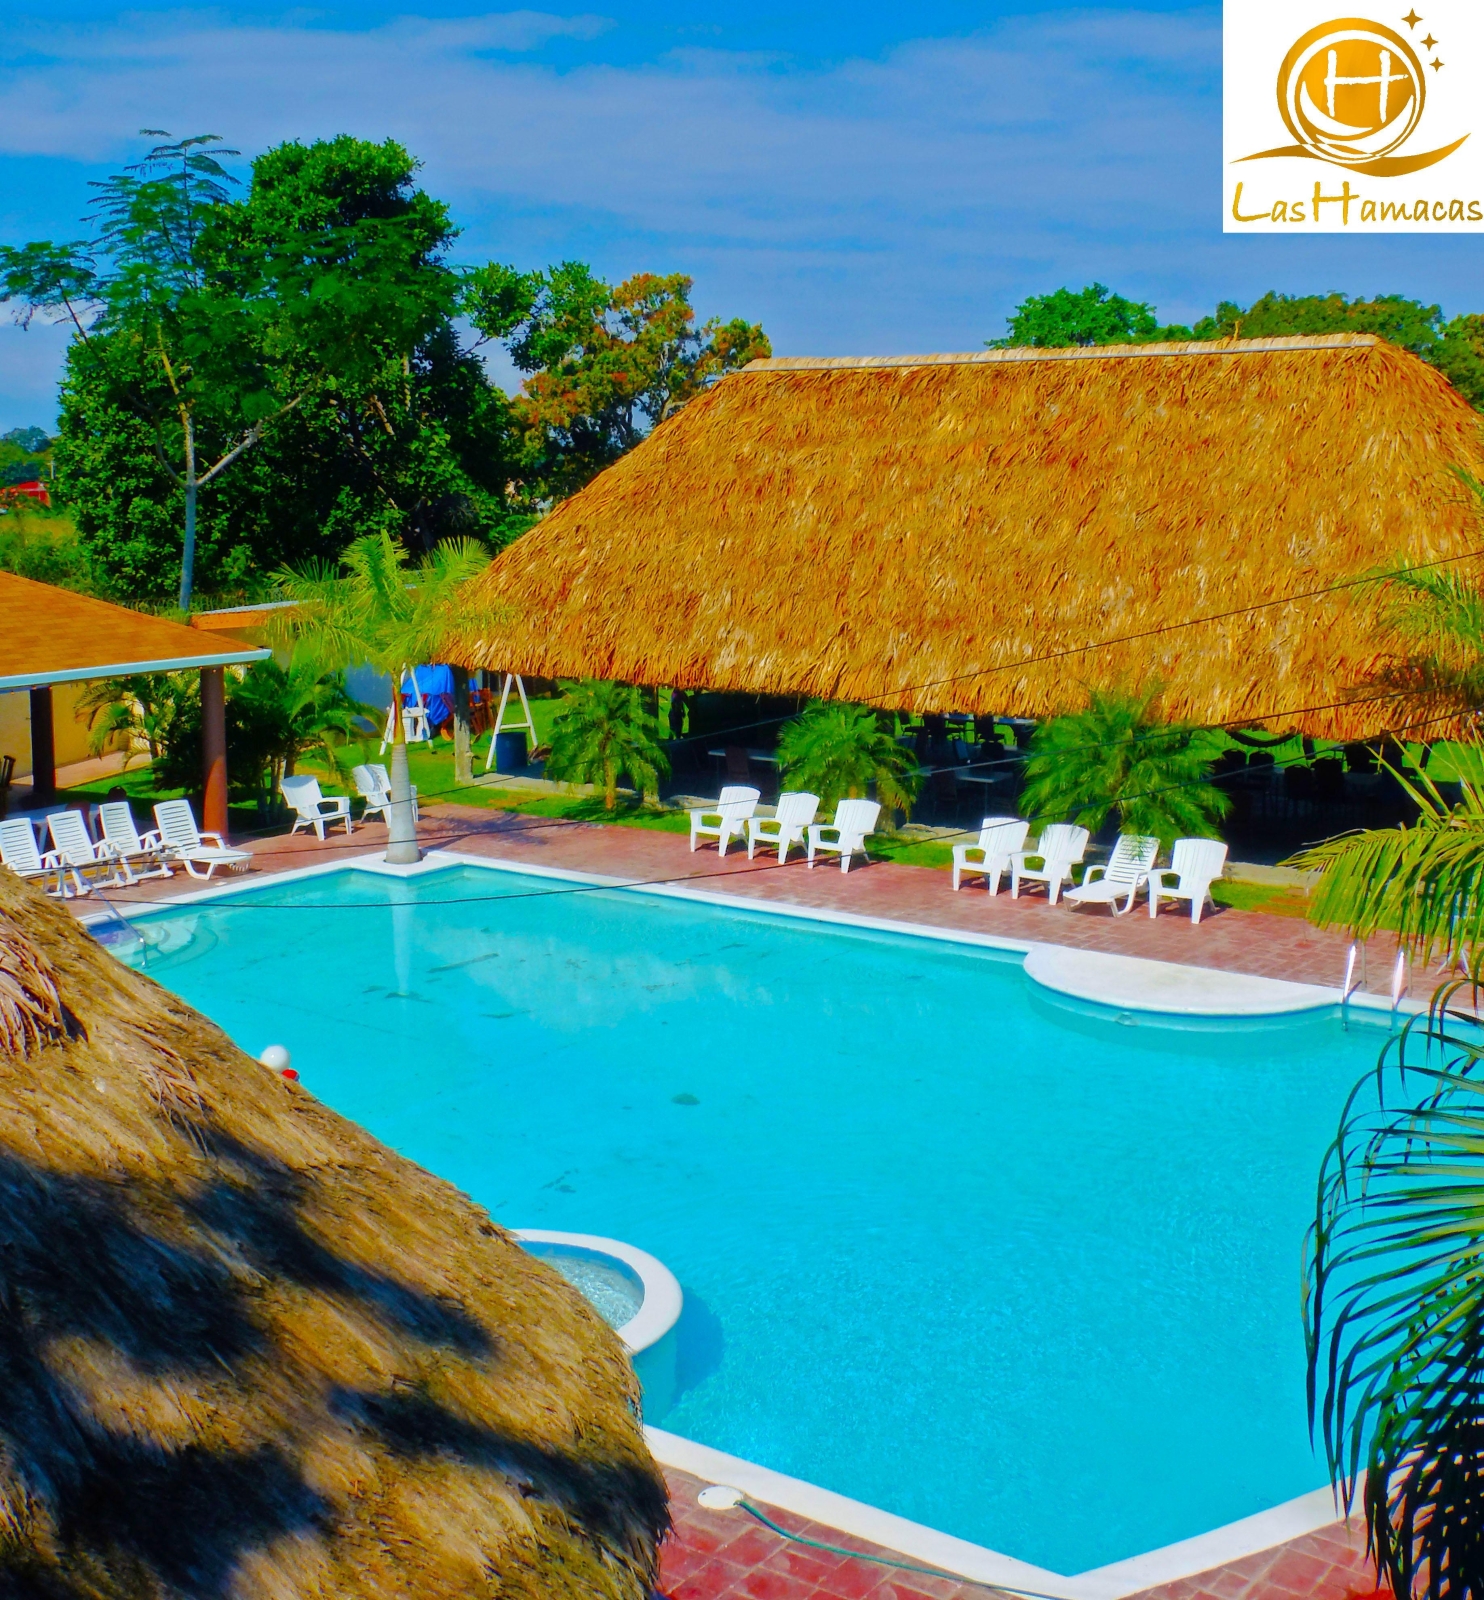 Hotel Las Hamacas - La Ceiba chez HRS avec services gratuits